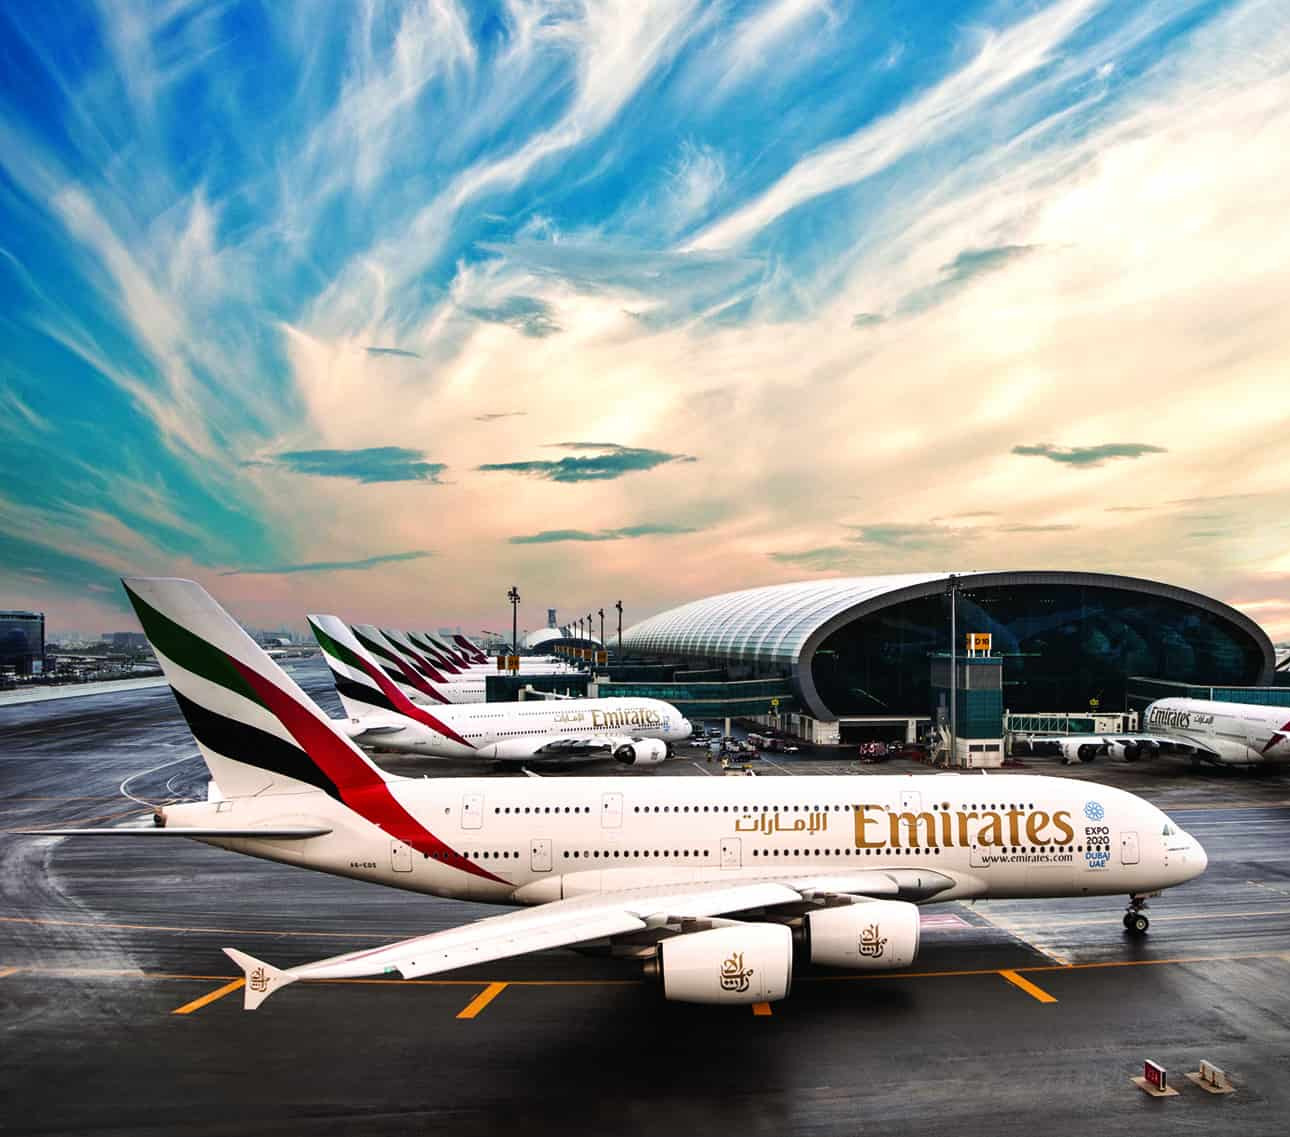 Emirates aircraft at Dubai international airport.